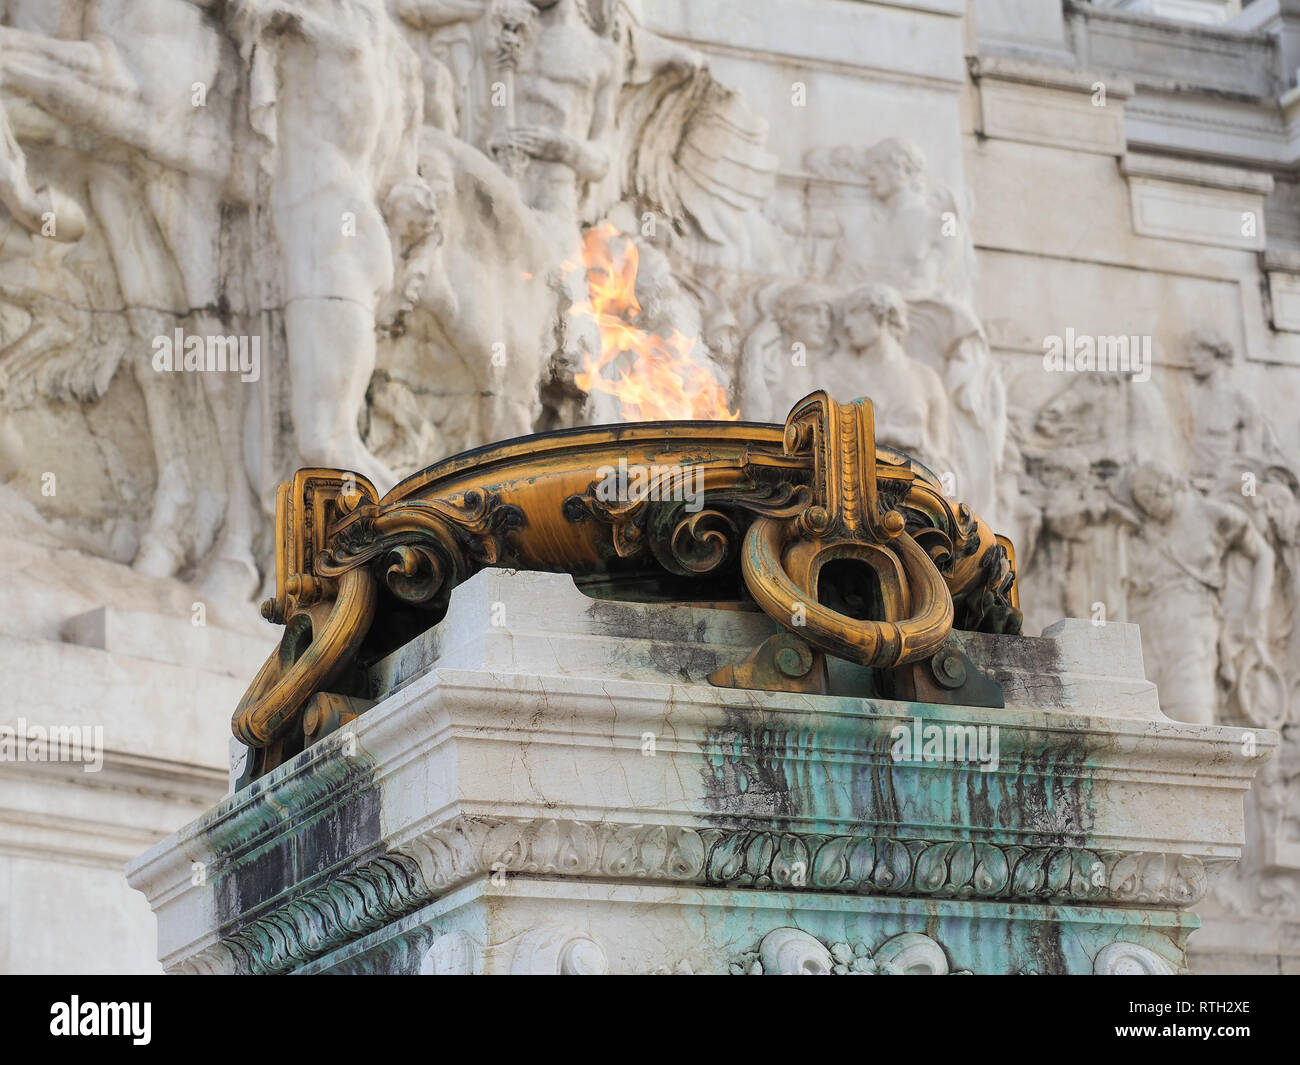 Das brennende Feuer Altar oder ewige Flamme. Altar des Vaterlandes ehren ersten König von Italien Vittorio Emanuele II und dem Ersten Weltkrieg Soldaten in Rom Stockfoto